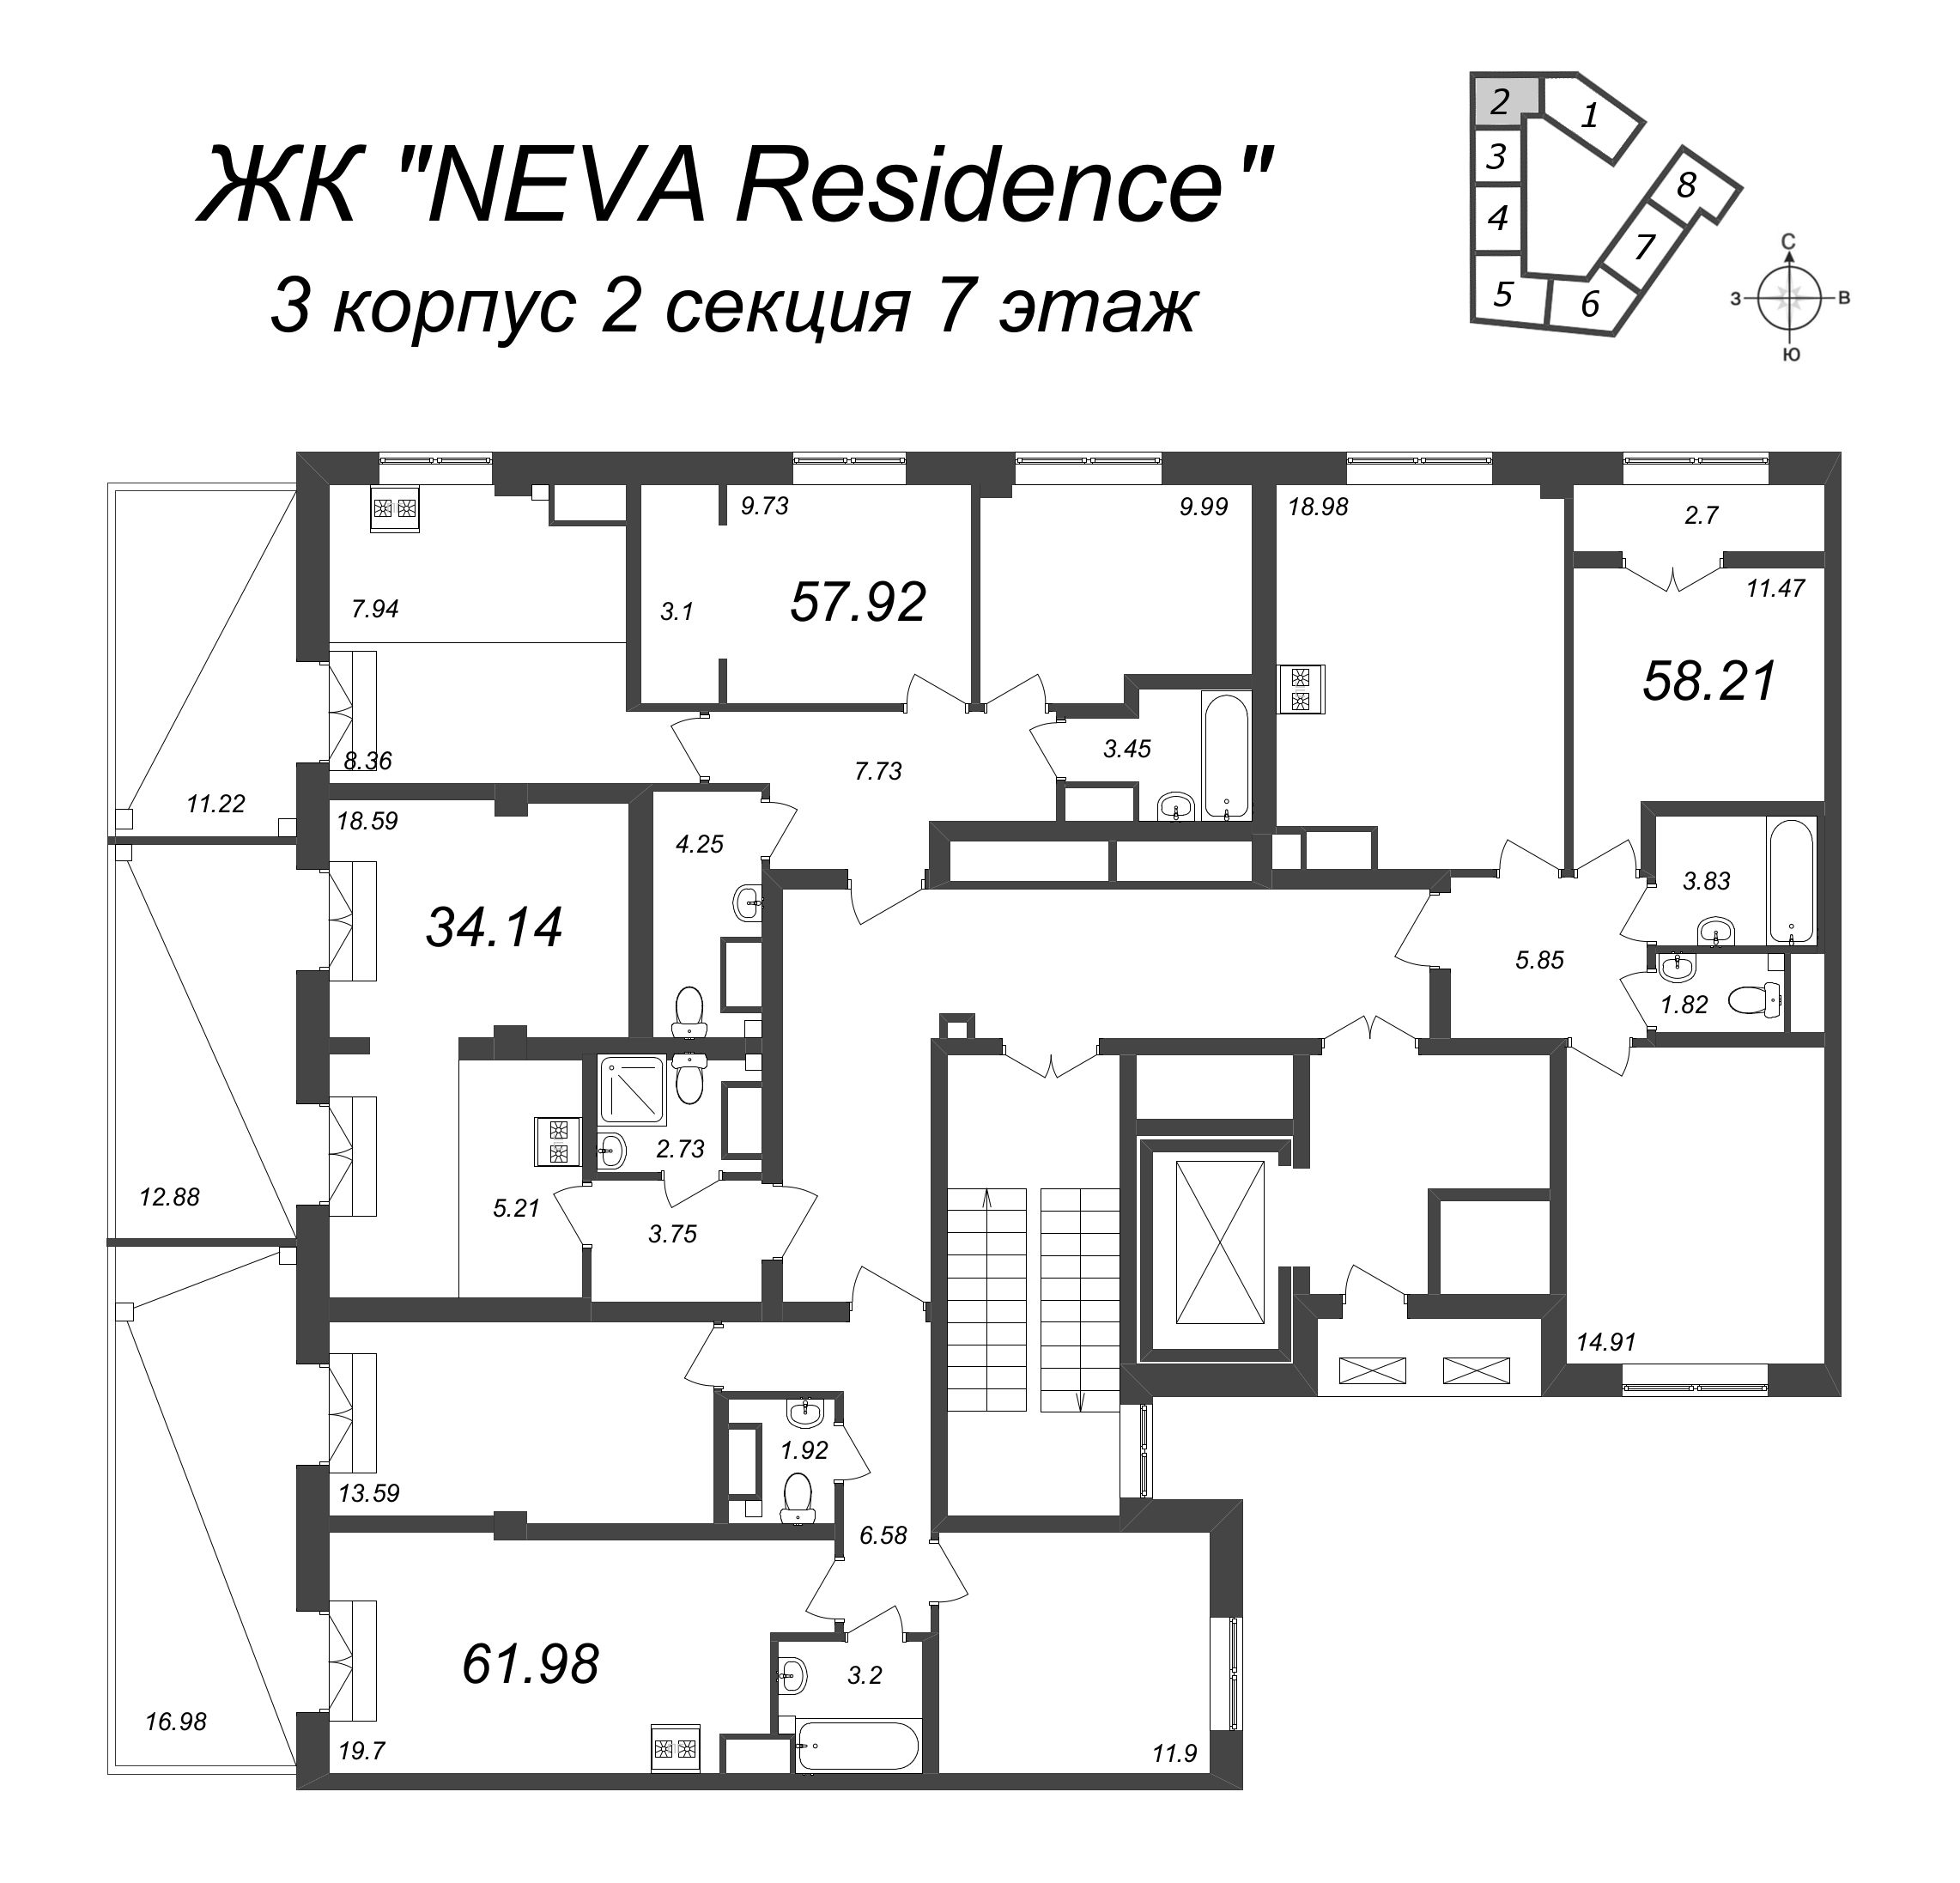 3-комнатная (Евро) квартира, 58.21 м² в ЖК "Neva Residence" - планировка этажа